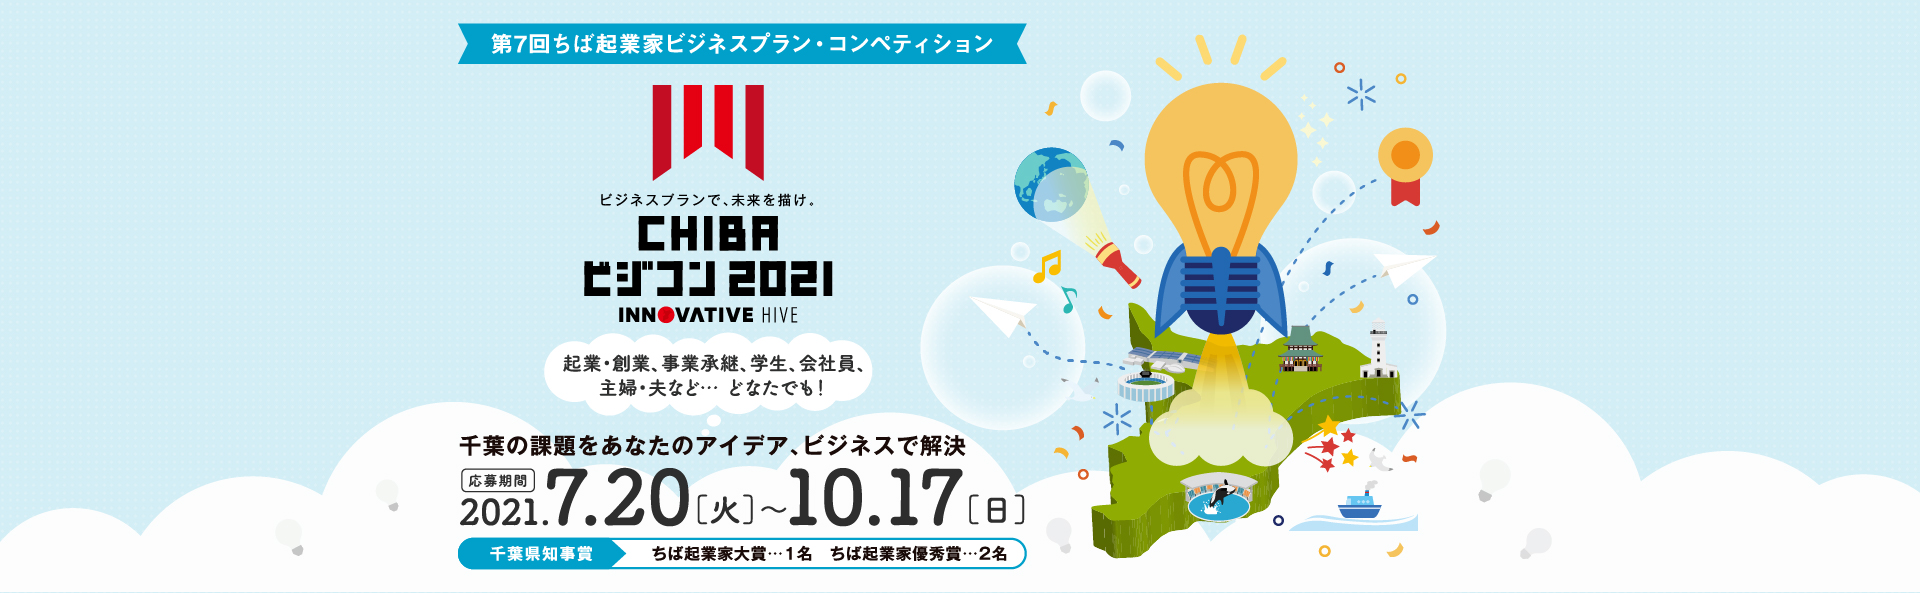 CHIBAビジコン2021 千葉県の課題をあなたのアイディア、ビジネスで解決。 ビジネスプランで、未来を描け。